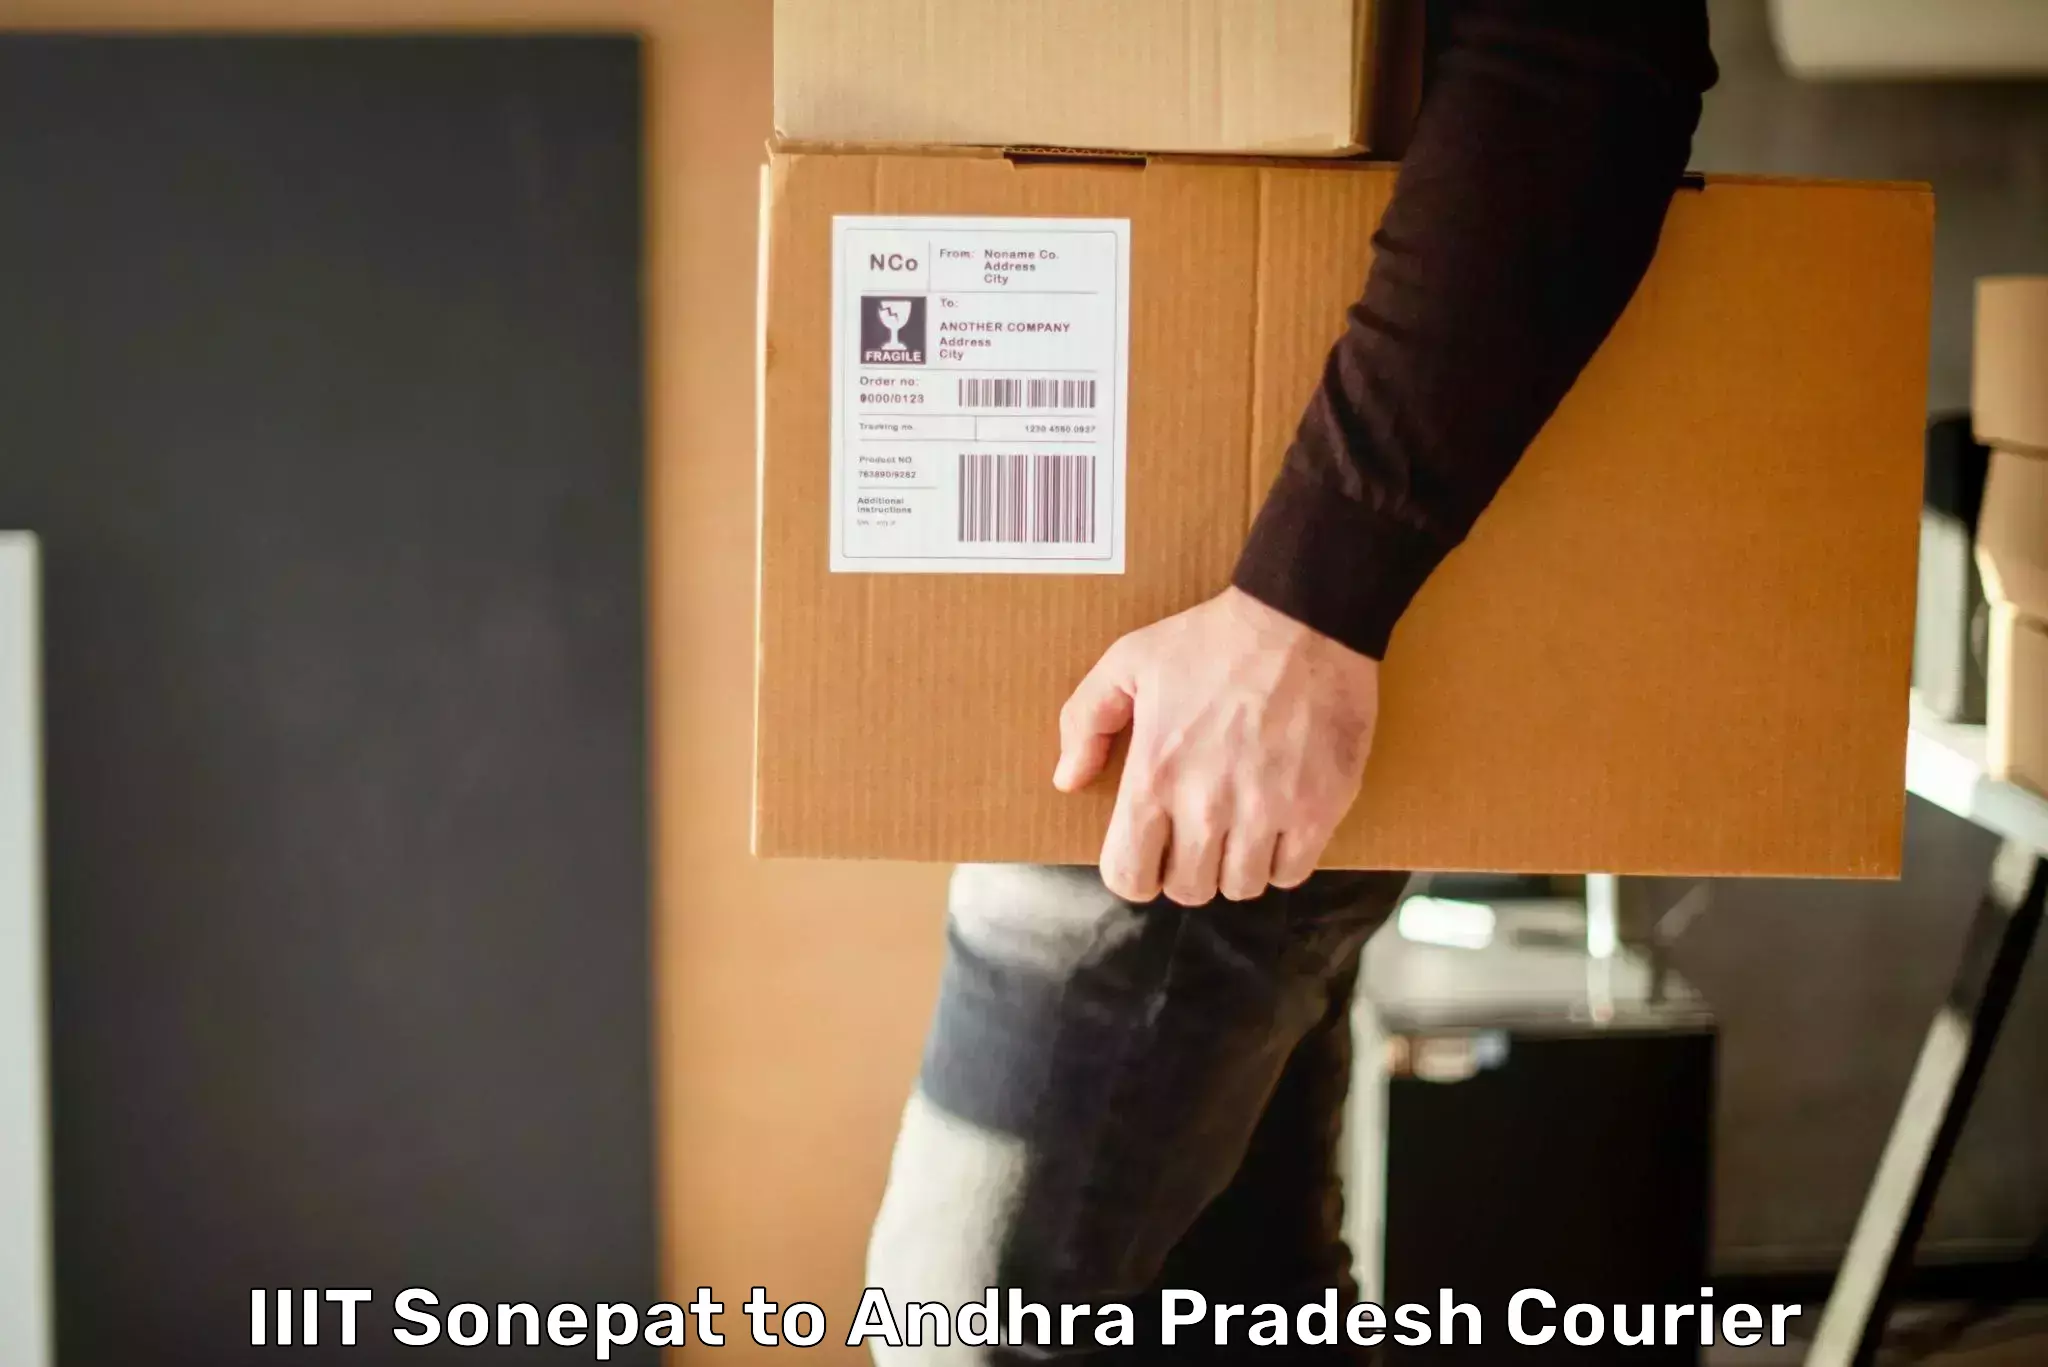 High-priority parcel service IIIT Sonepat to Devarapalli